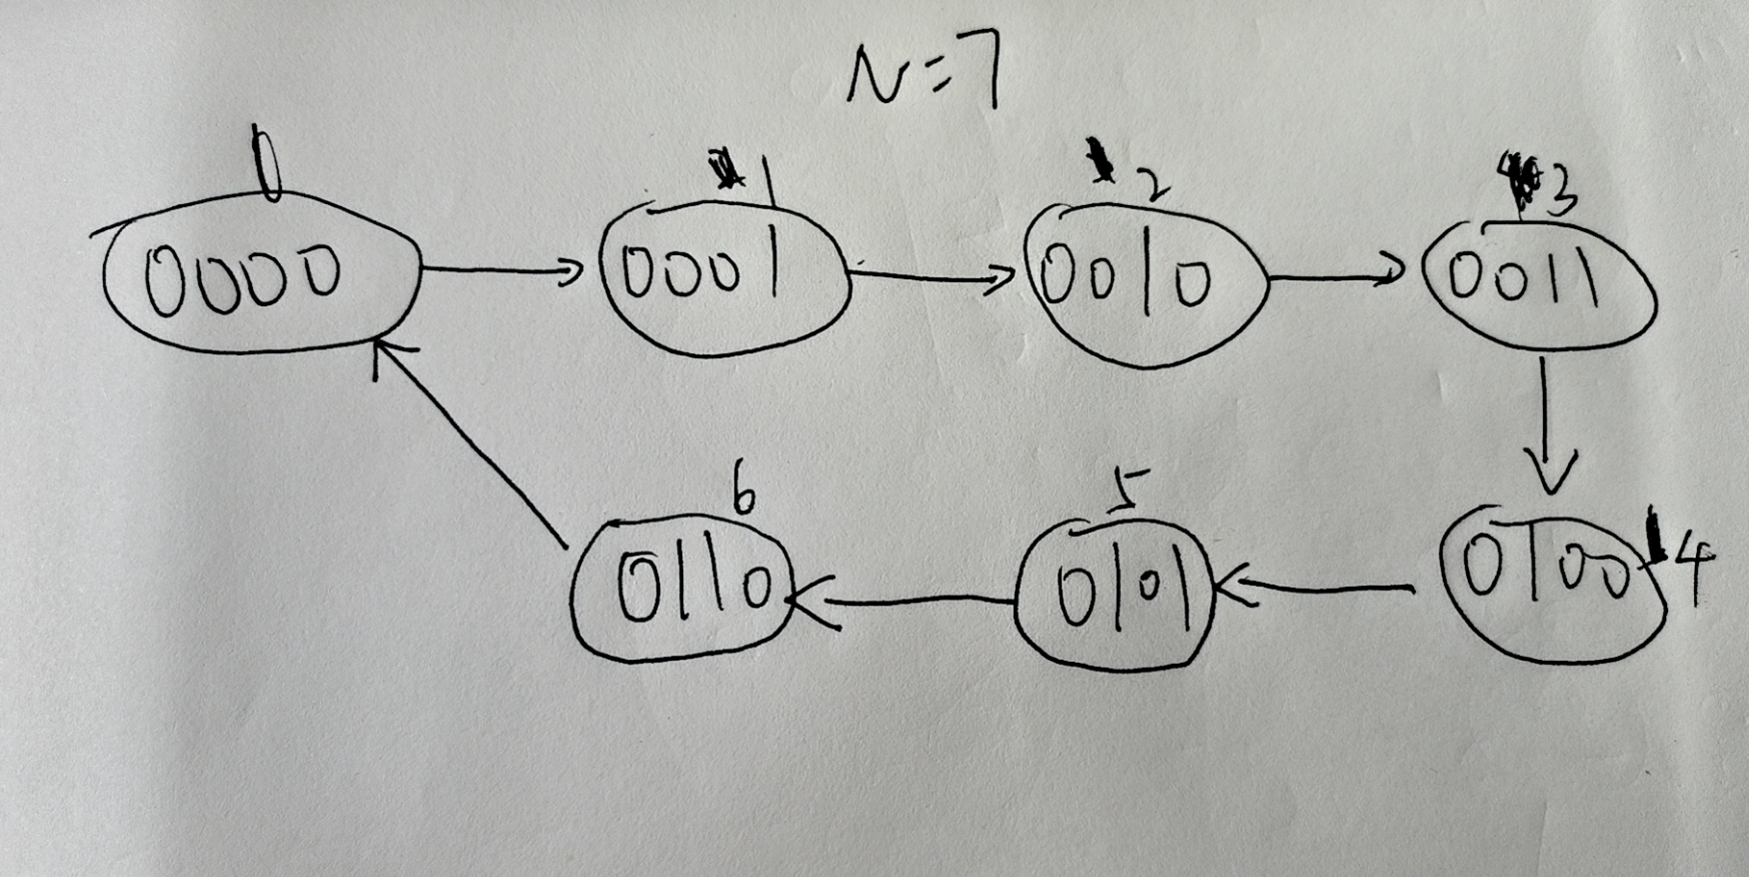 十进制转二进制的流程图_74ls20逻辑图及真值表